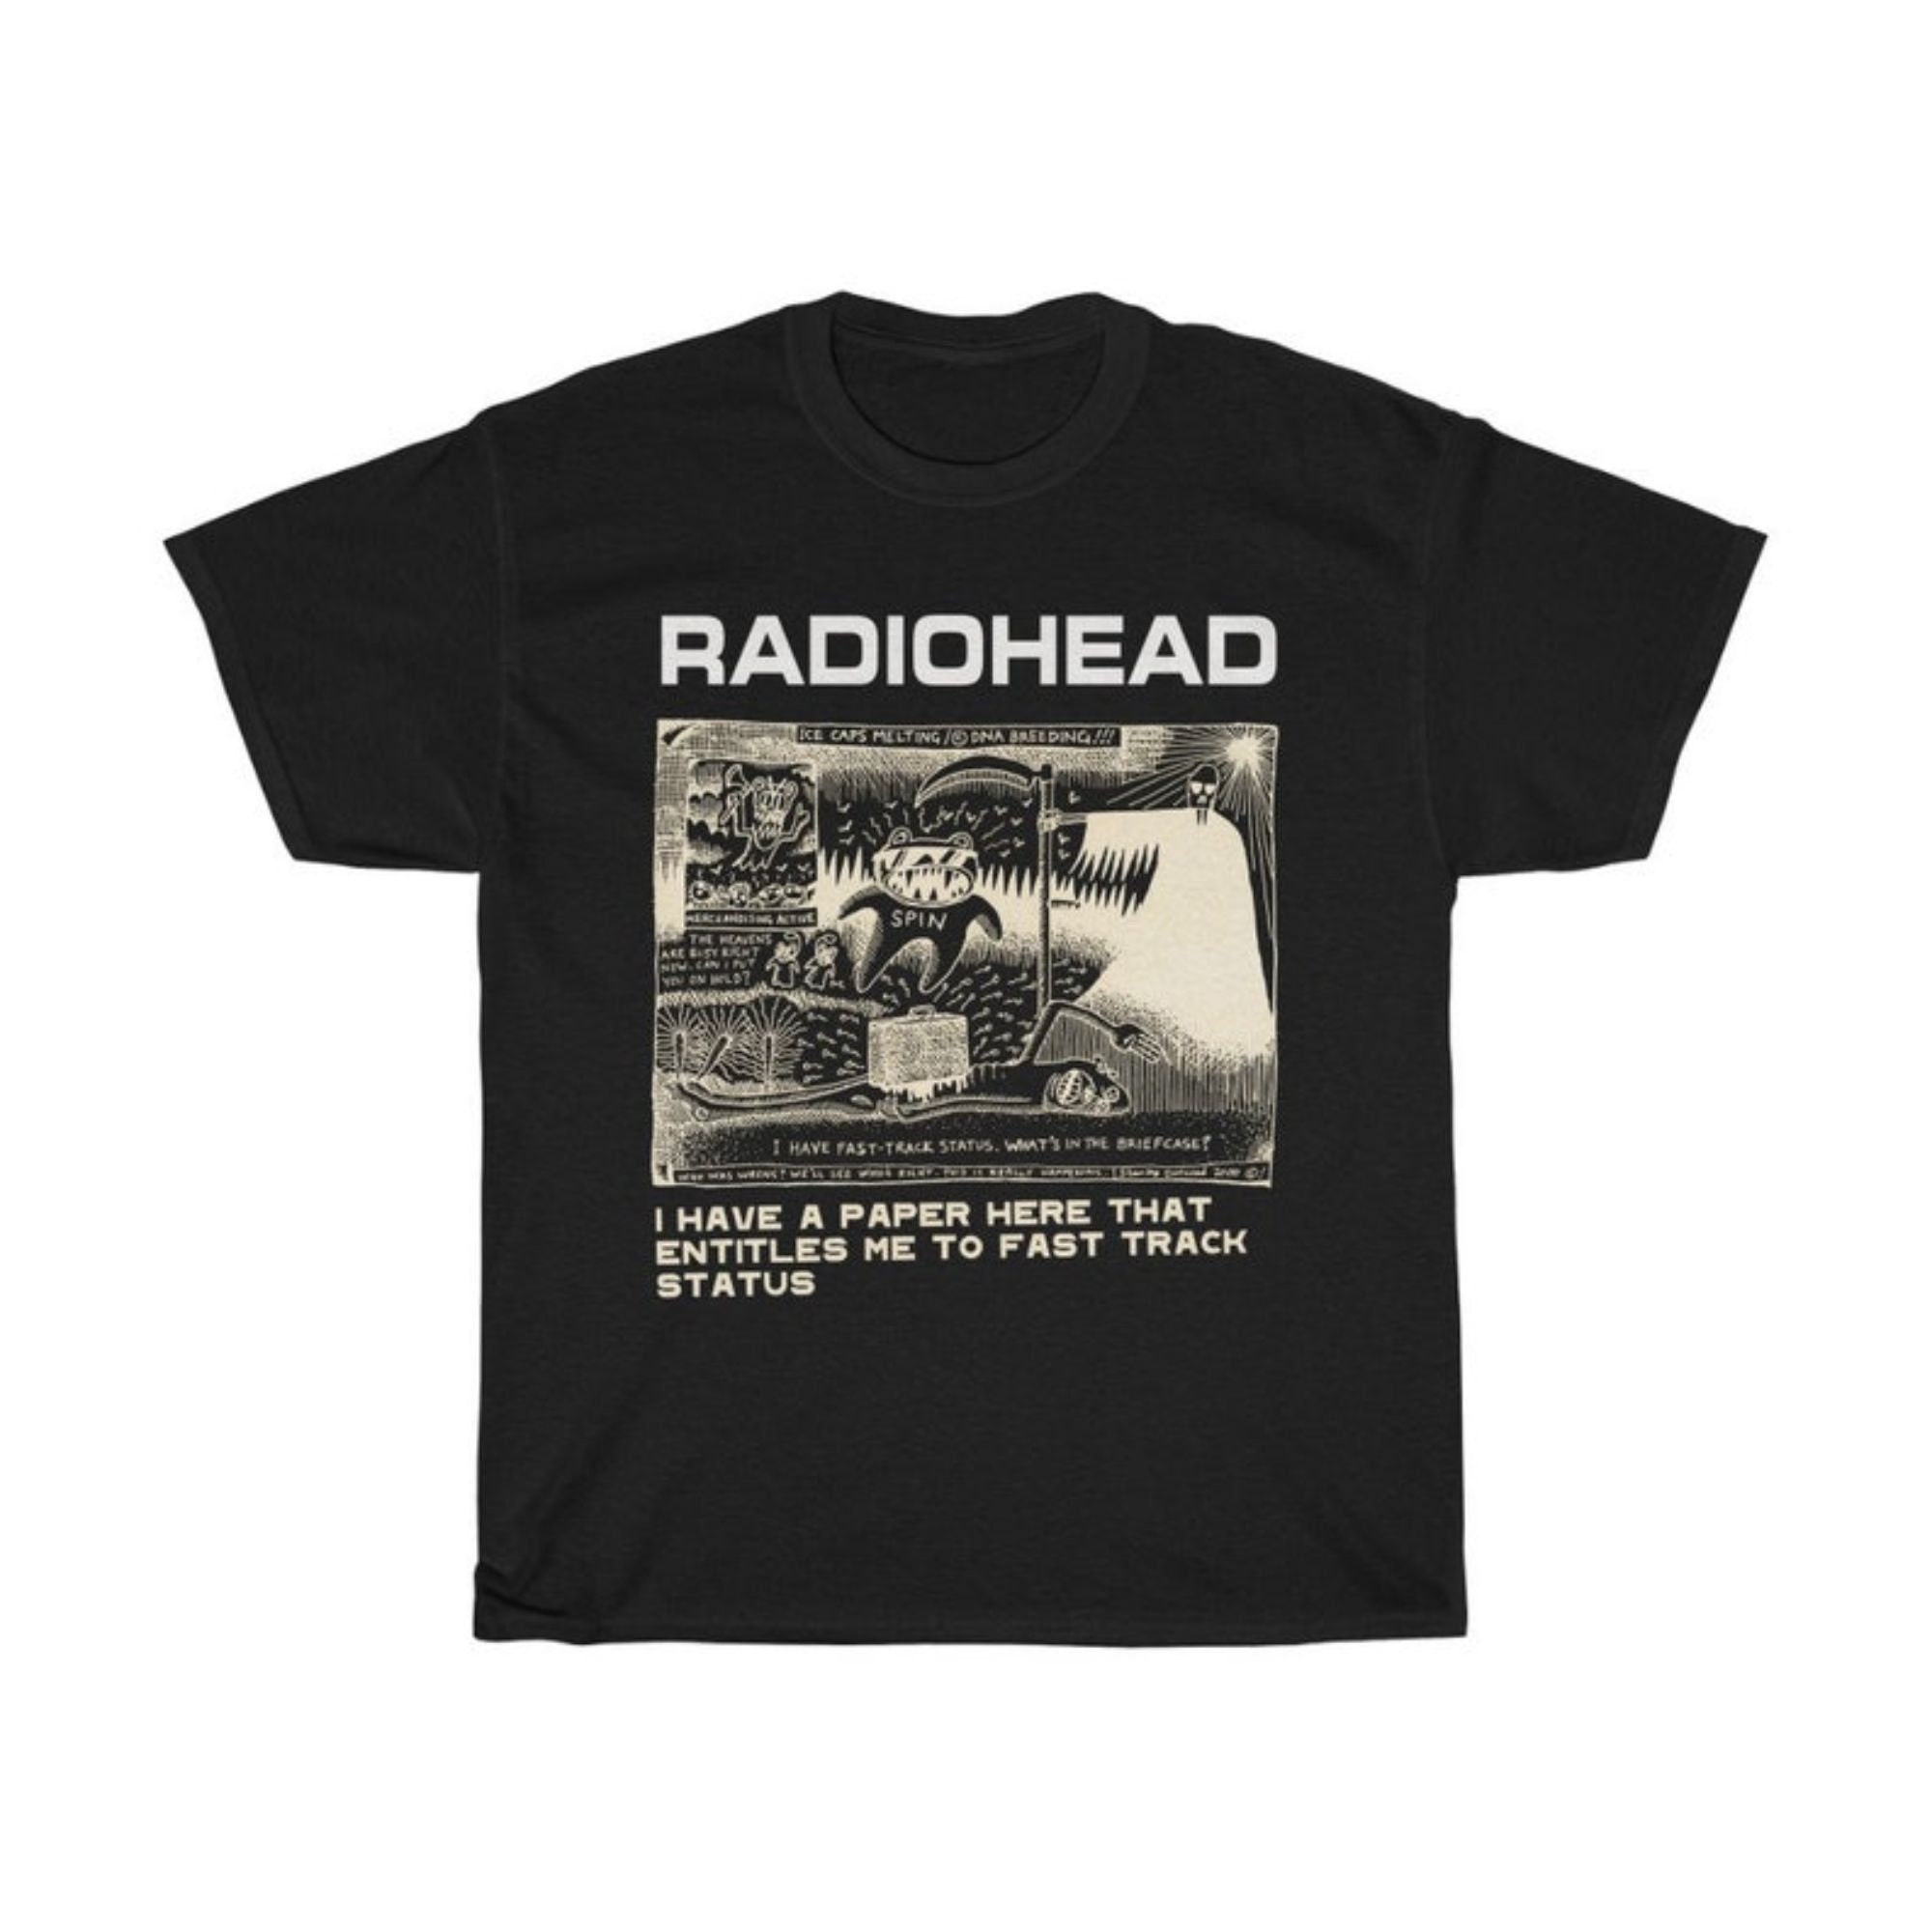 RADIOHEAD, Radiohead Shirt, Vintage tee